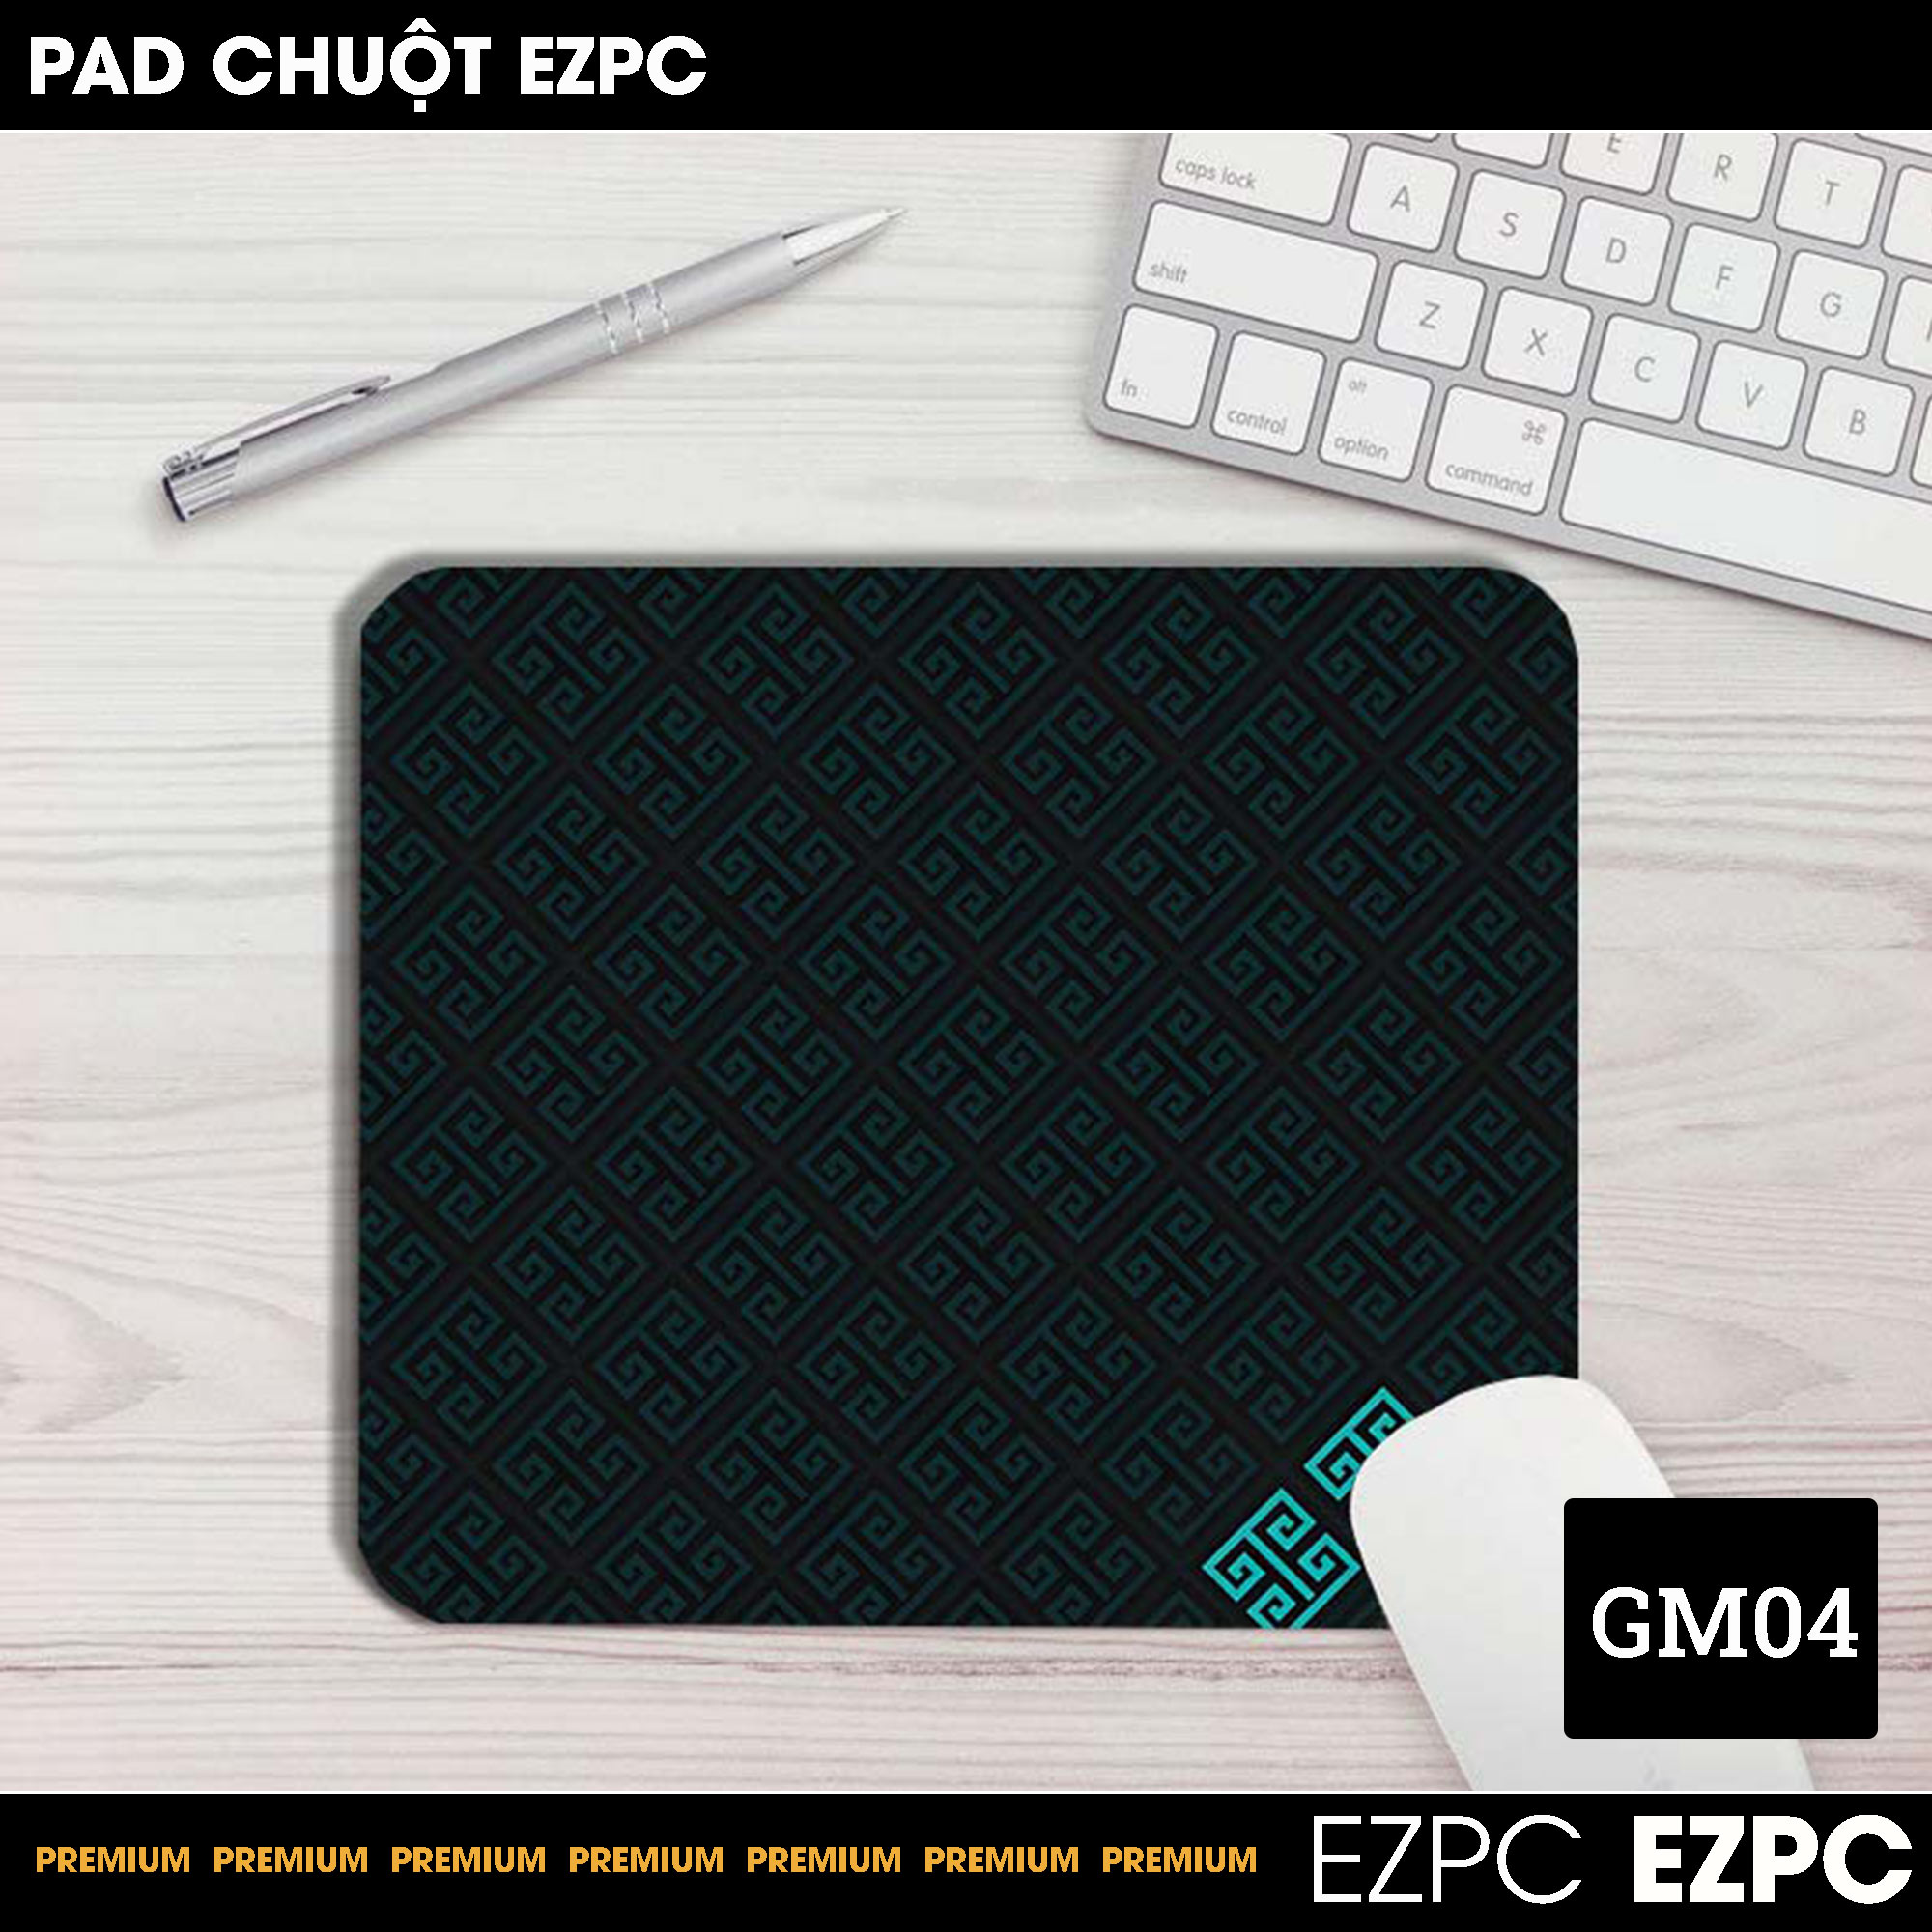 Miếng Lót Chuột, Pad Chuột Cỡ Nhỏ GM04 Size 45x40 | EZPC